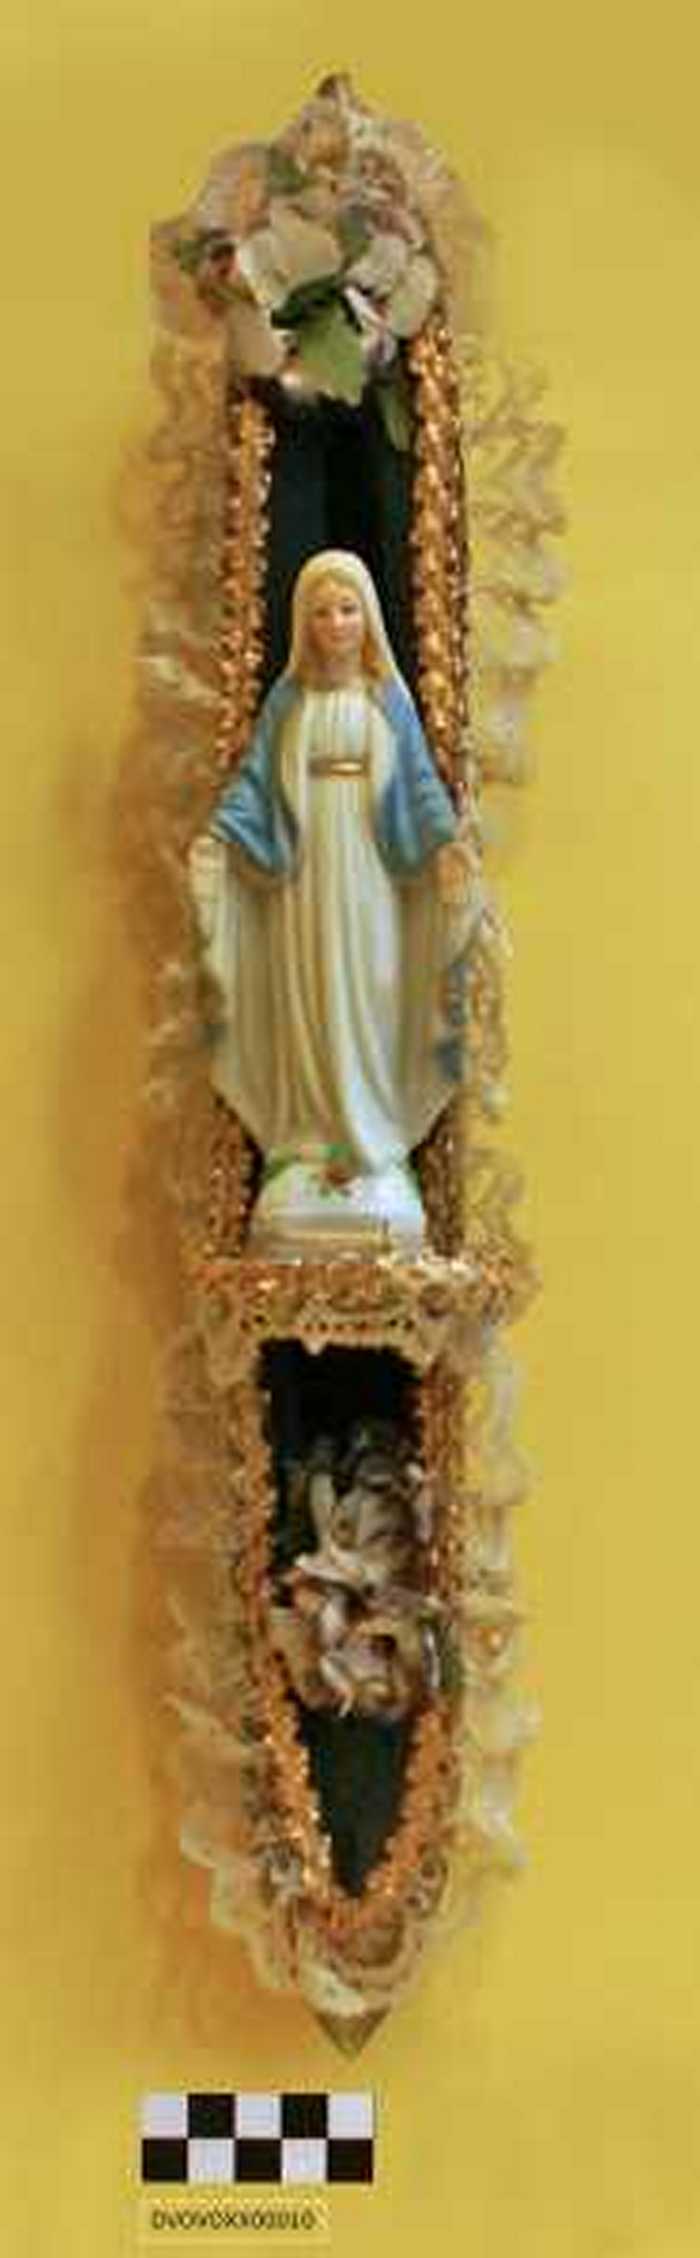 Heilige Maria verwerkt in een spoel.